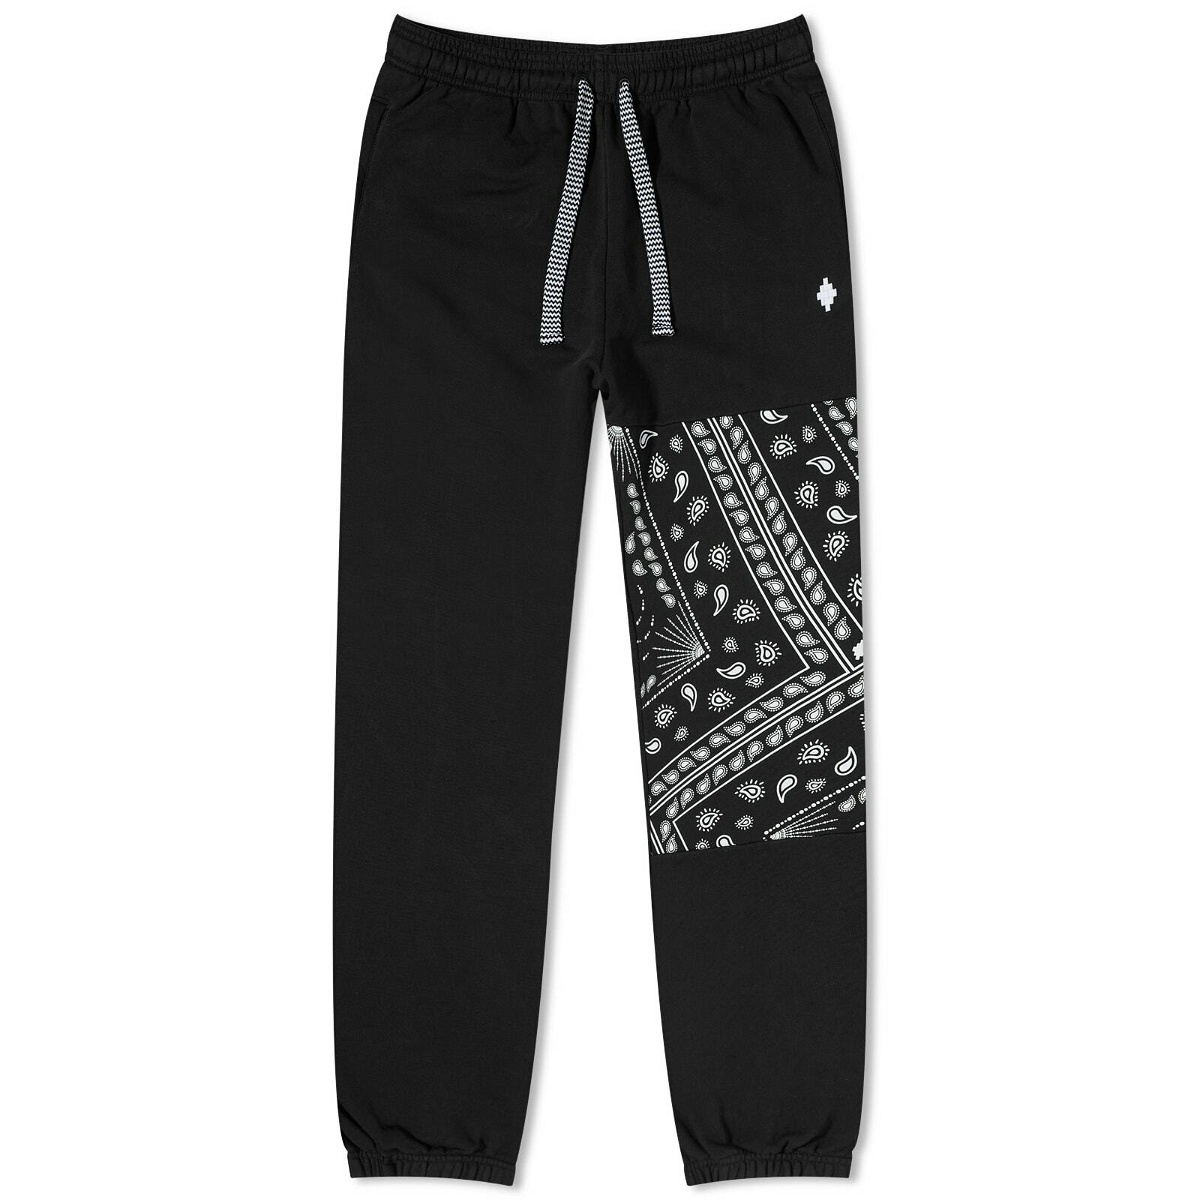 MARCELO BURLON NBA Sweatpants, Black – OZNICO